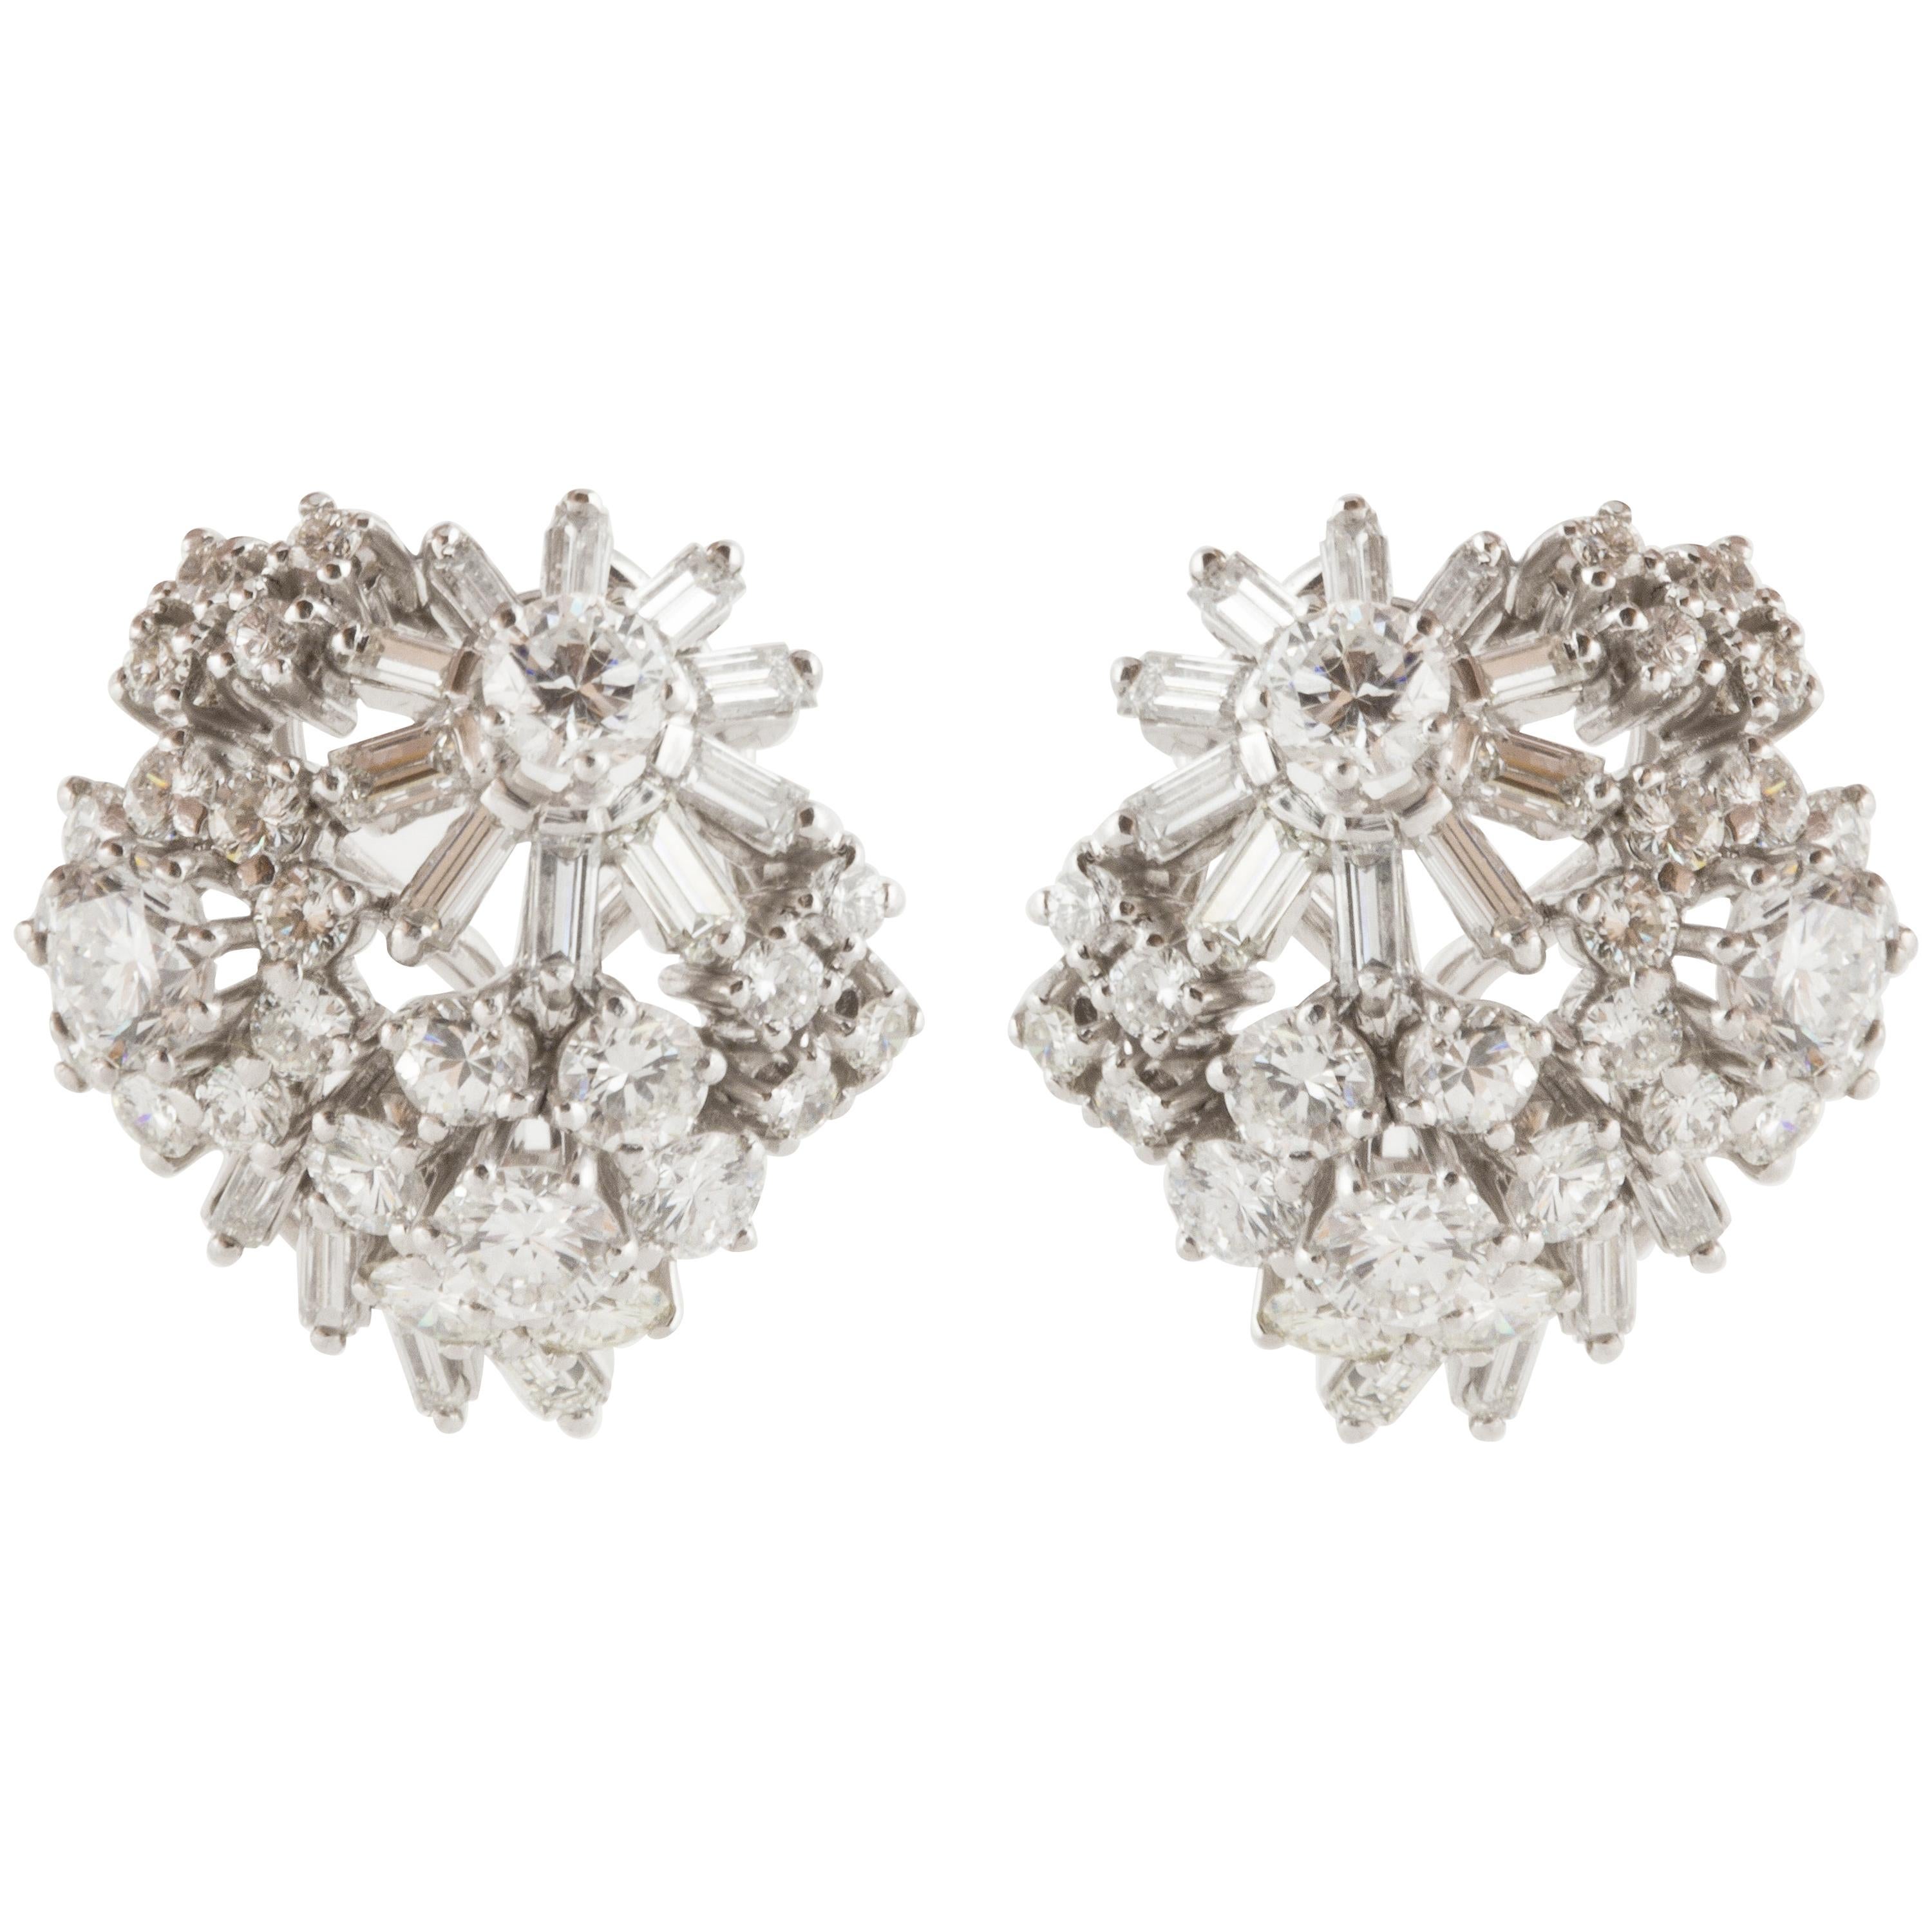 1950s Platinum Diamond Cluster Earrings